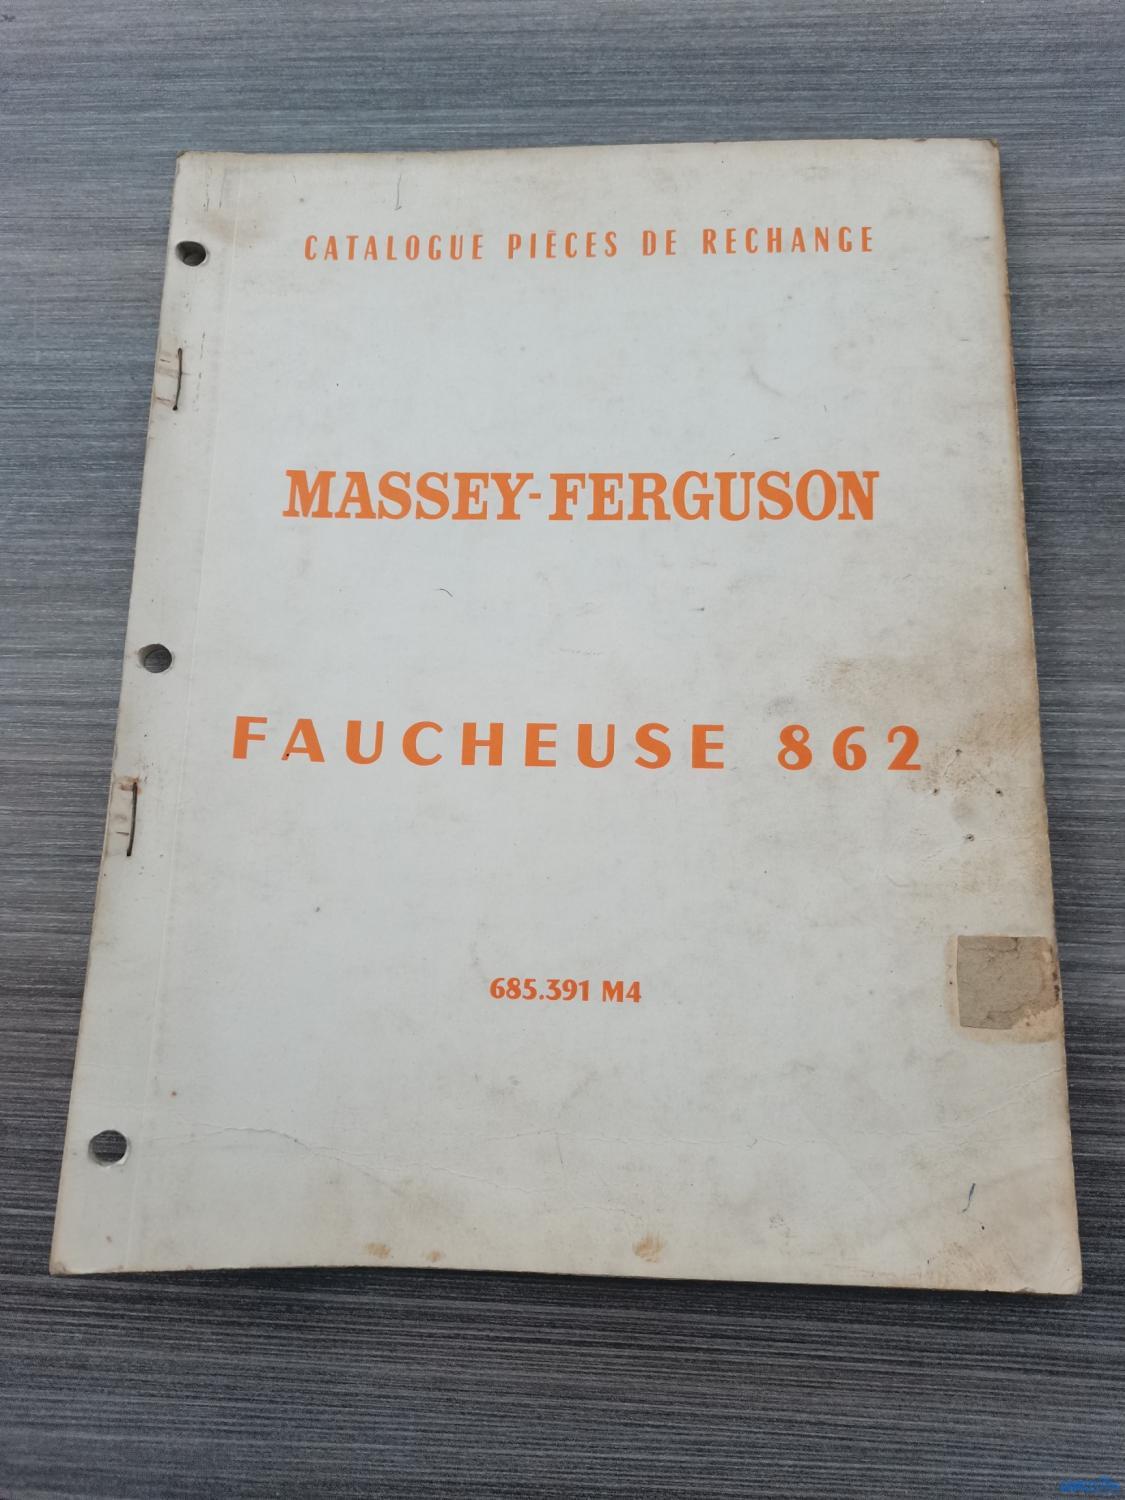 Catalogue de pièces détachées pour faucheuse 862 Massey-Ferguson